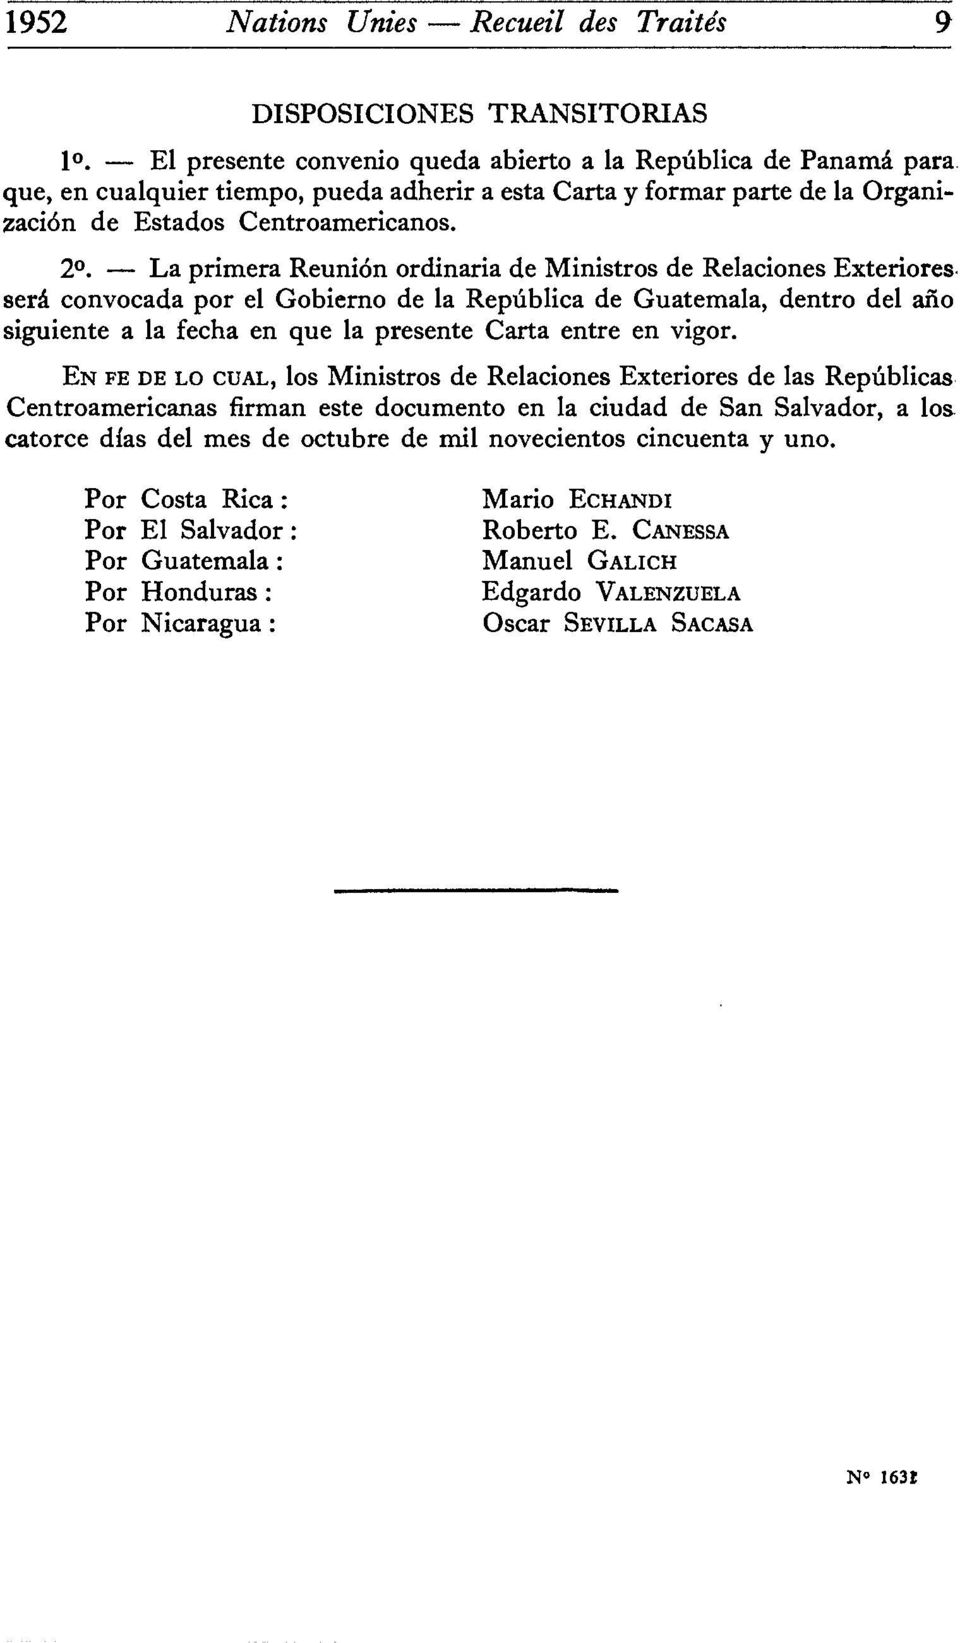 La primera Réunion ordinaria de Ministres de Relaciones Exteriores sera convocada por el Gobierno de la Repûblica de Guatemala, dentro del ano siguiente a la fecha en que la présente Carta entre en